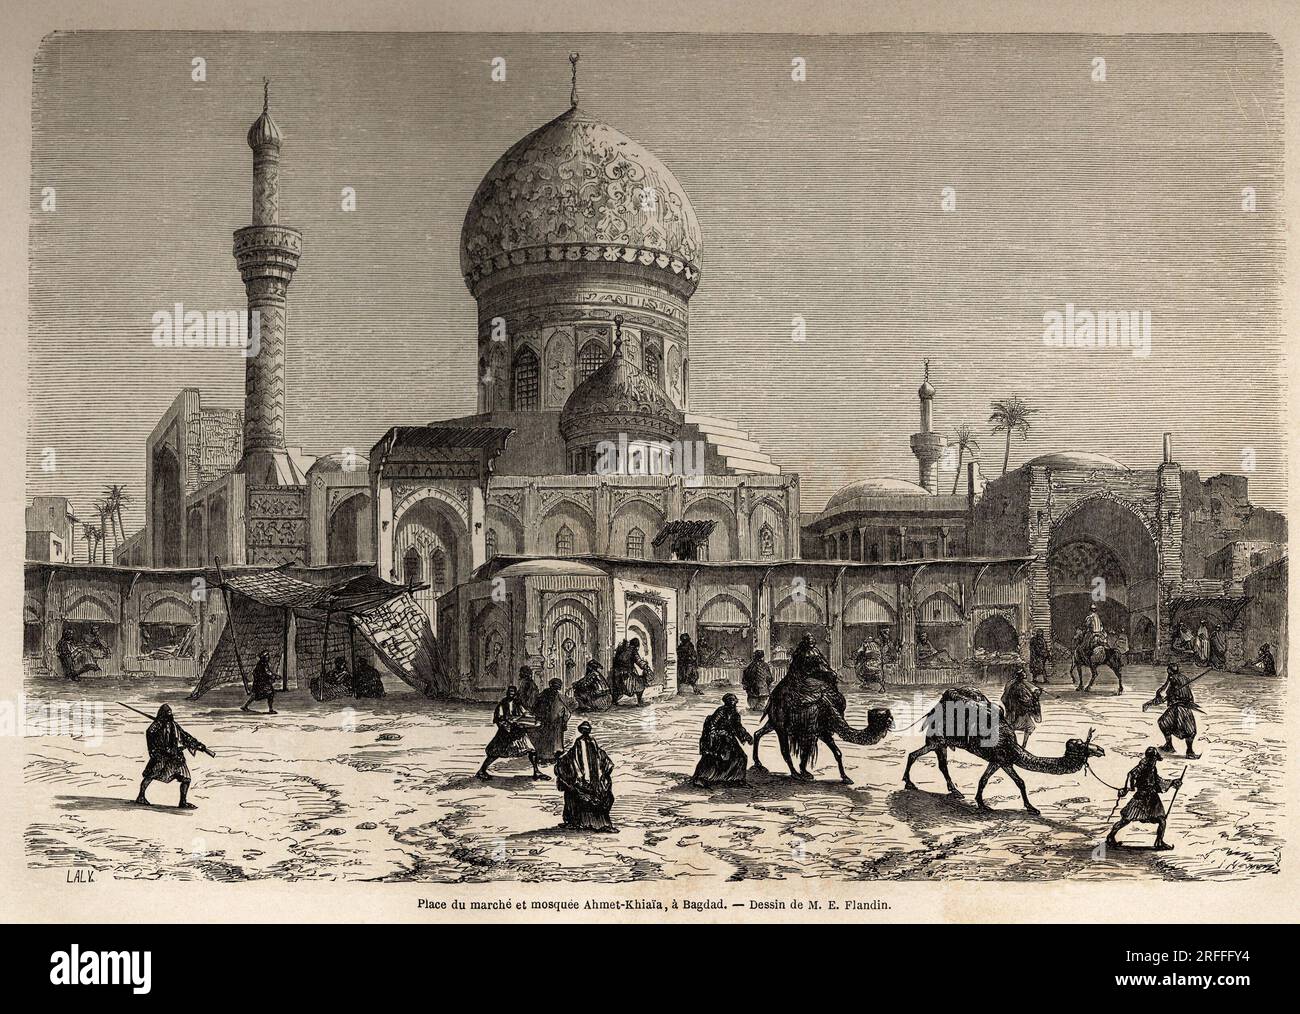 La Place du marche et la Mosquee Ahmet Khiaia, a Bagdad, dessin de Eugene Flandin (1809-1876), pour Illustrator son voyage en Mesopotamie, en 1840-1842. Gravure in „Le Tour du Monde“ 1861. Stockfoto